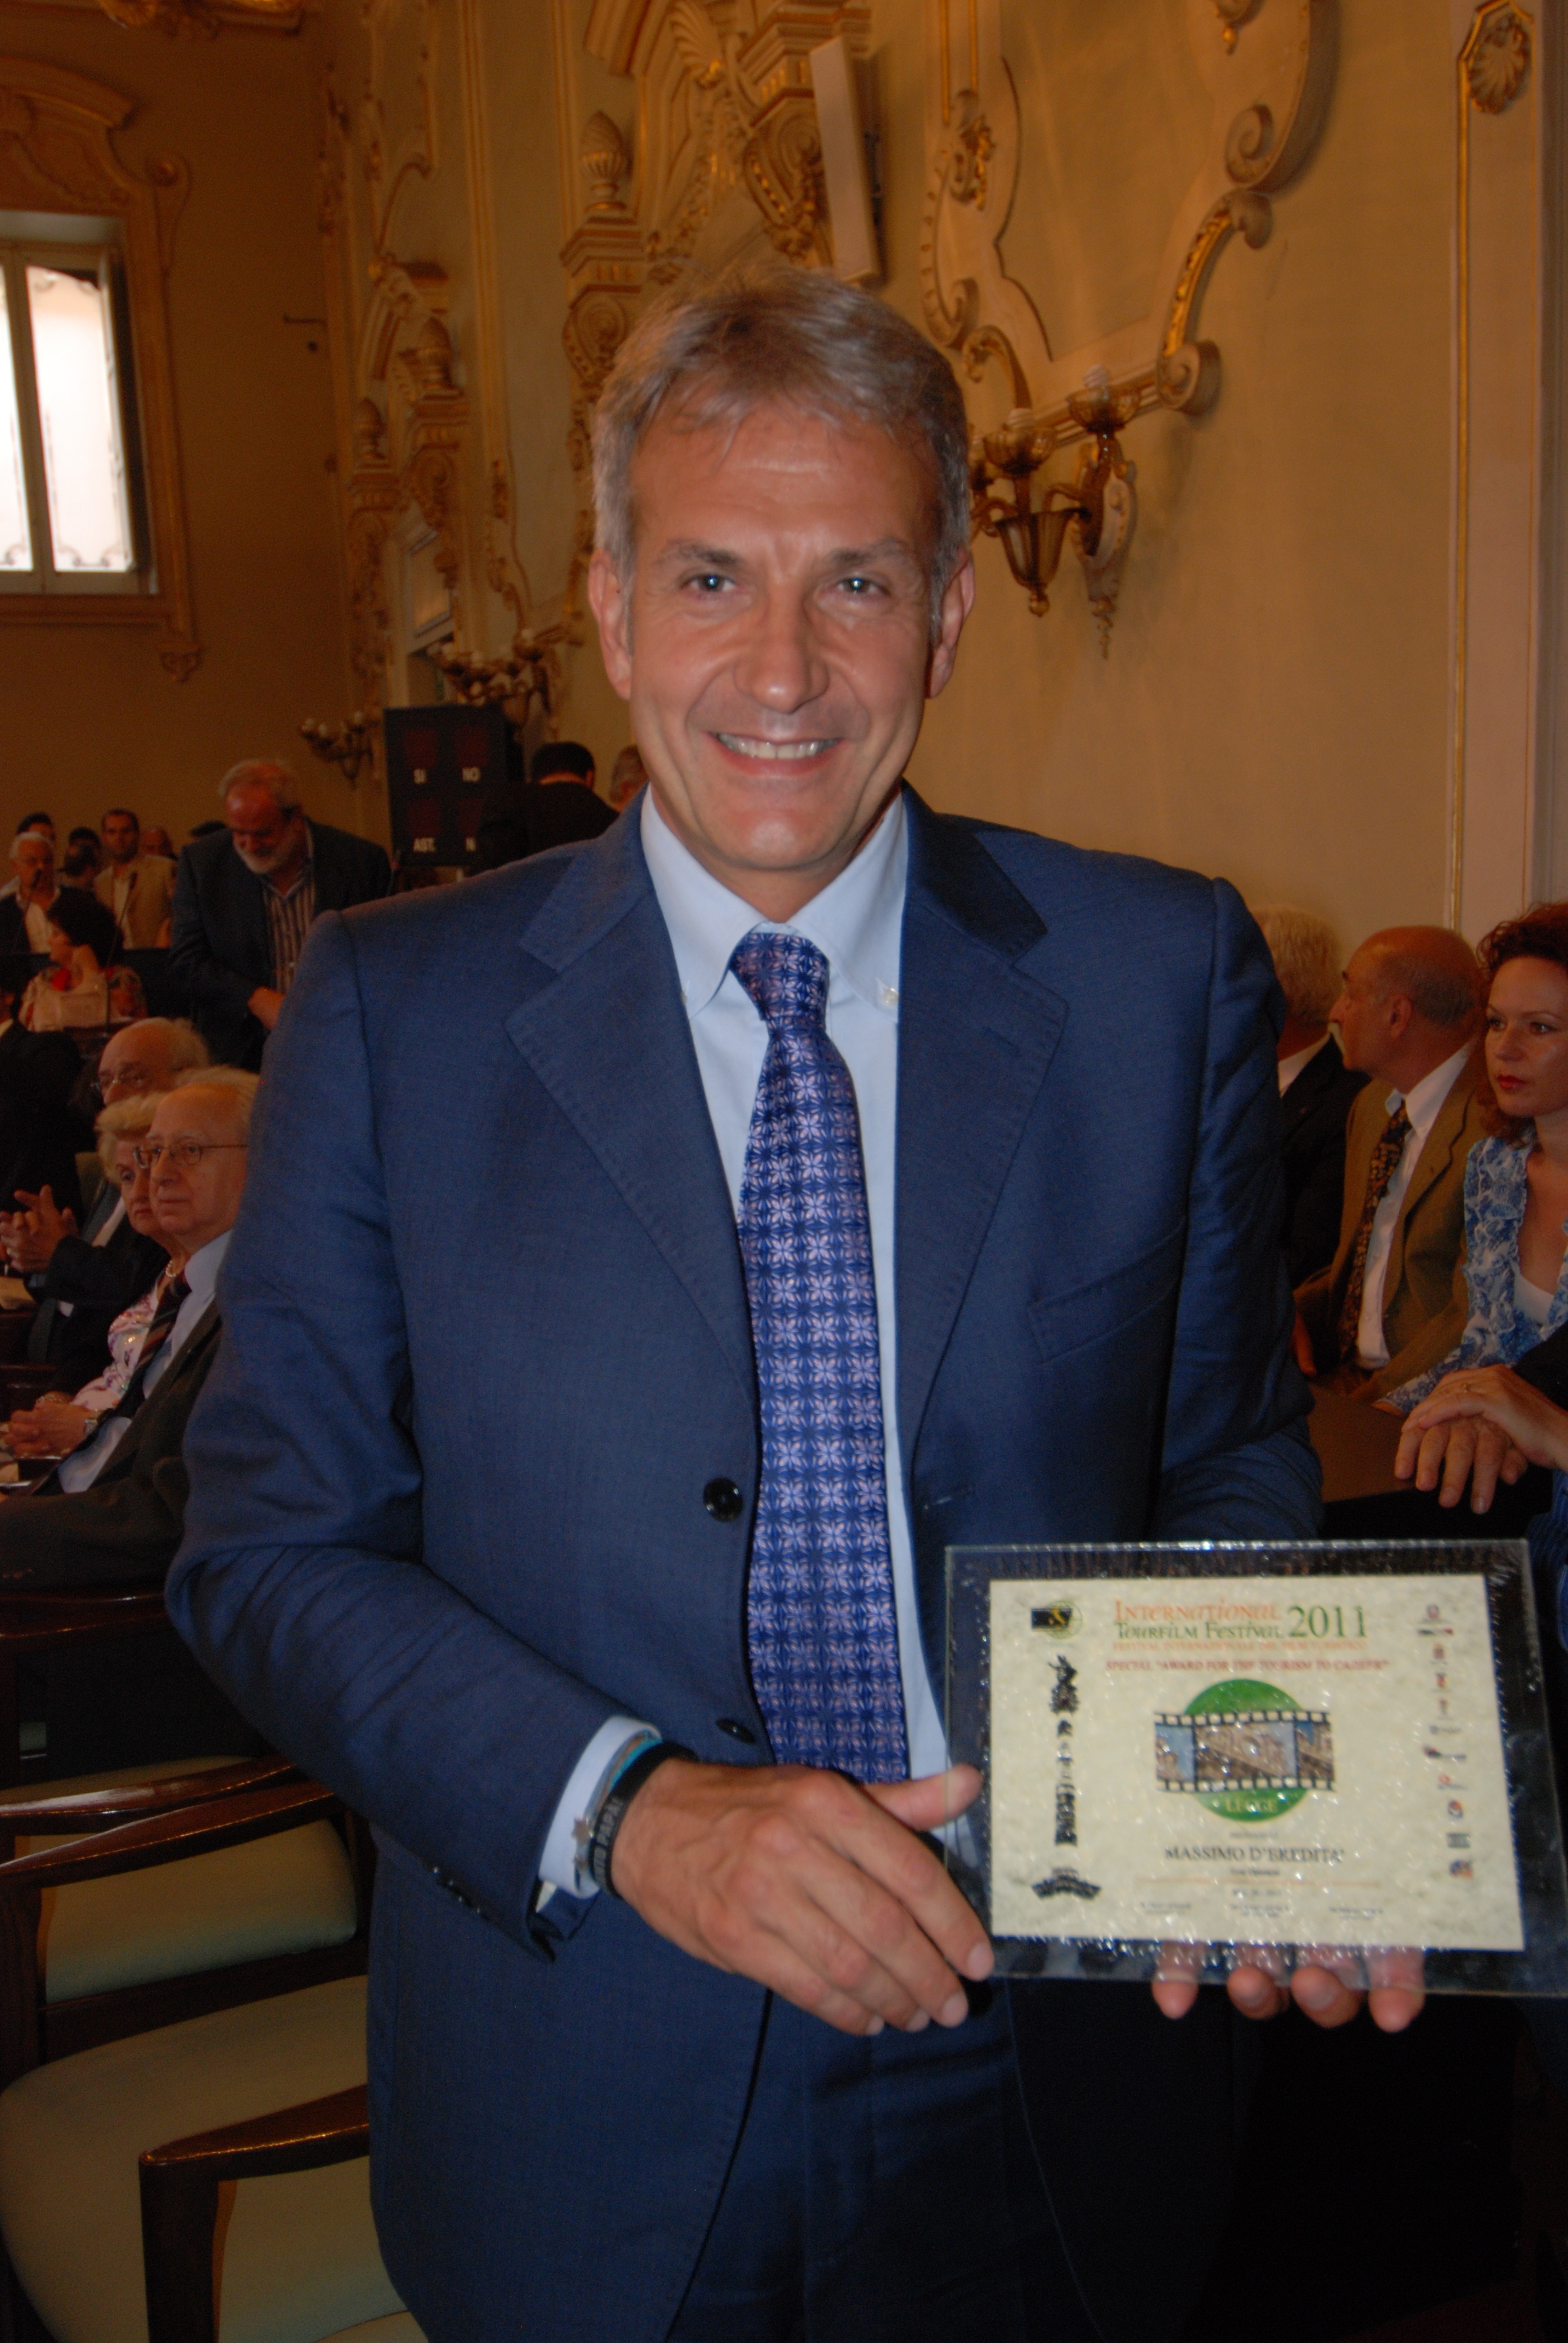 Al 47° International TourFilmFestival di Lecce, Massimo D’Eredità di Dimensione Triade riceve il “Premio alla carriera per il turismo”